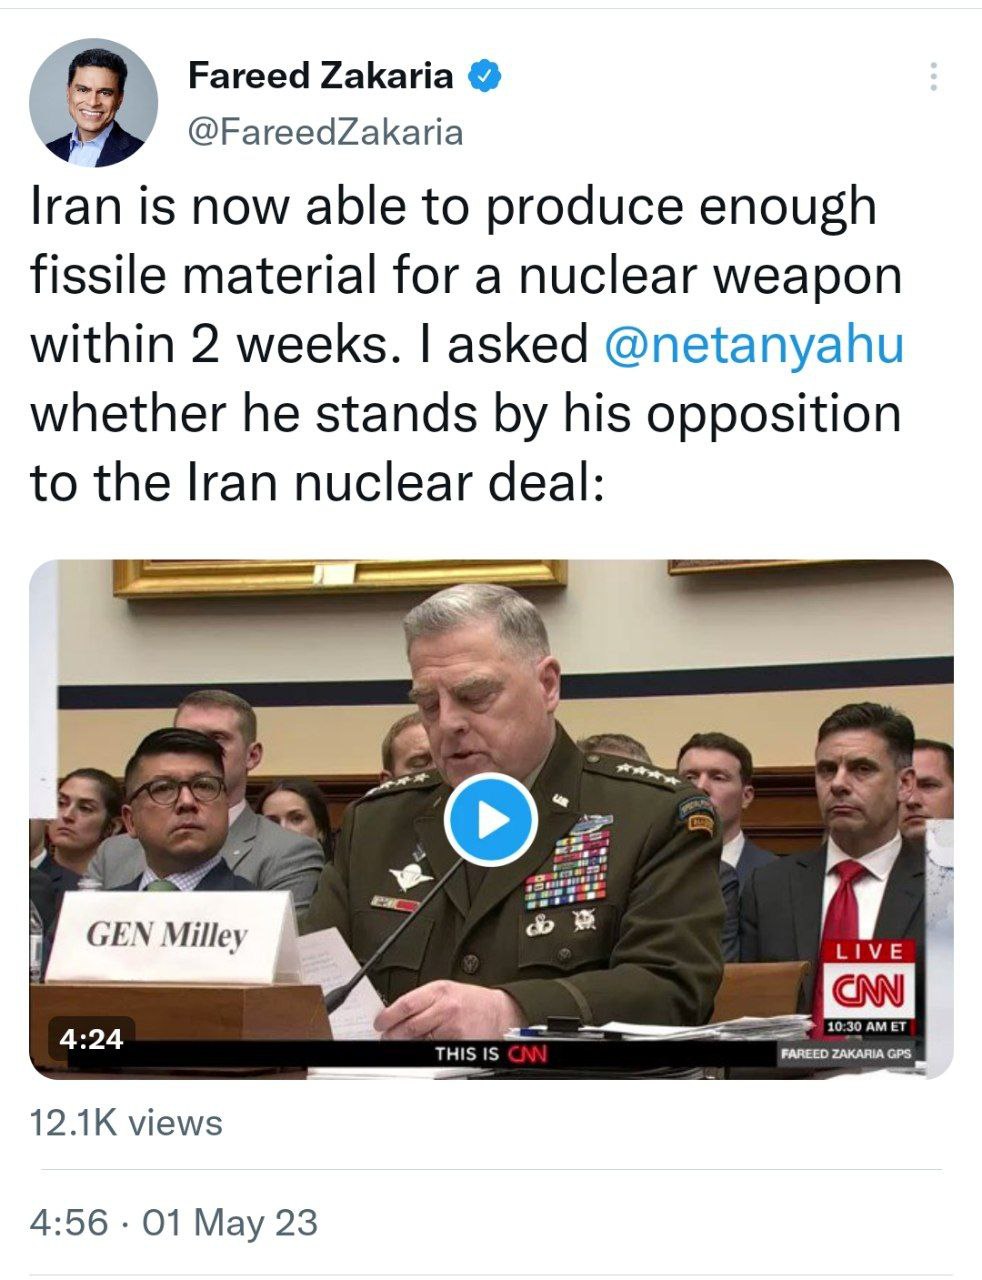 ایران در دو هفته بمب اتم را می سازد؟ 